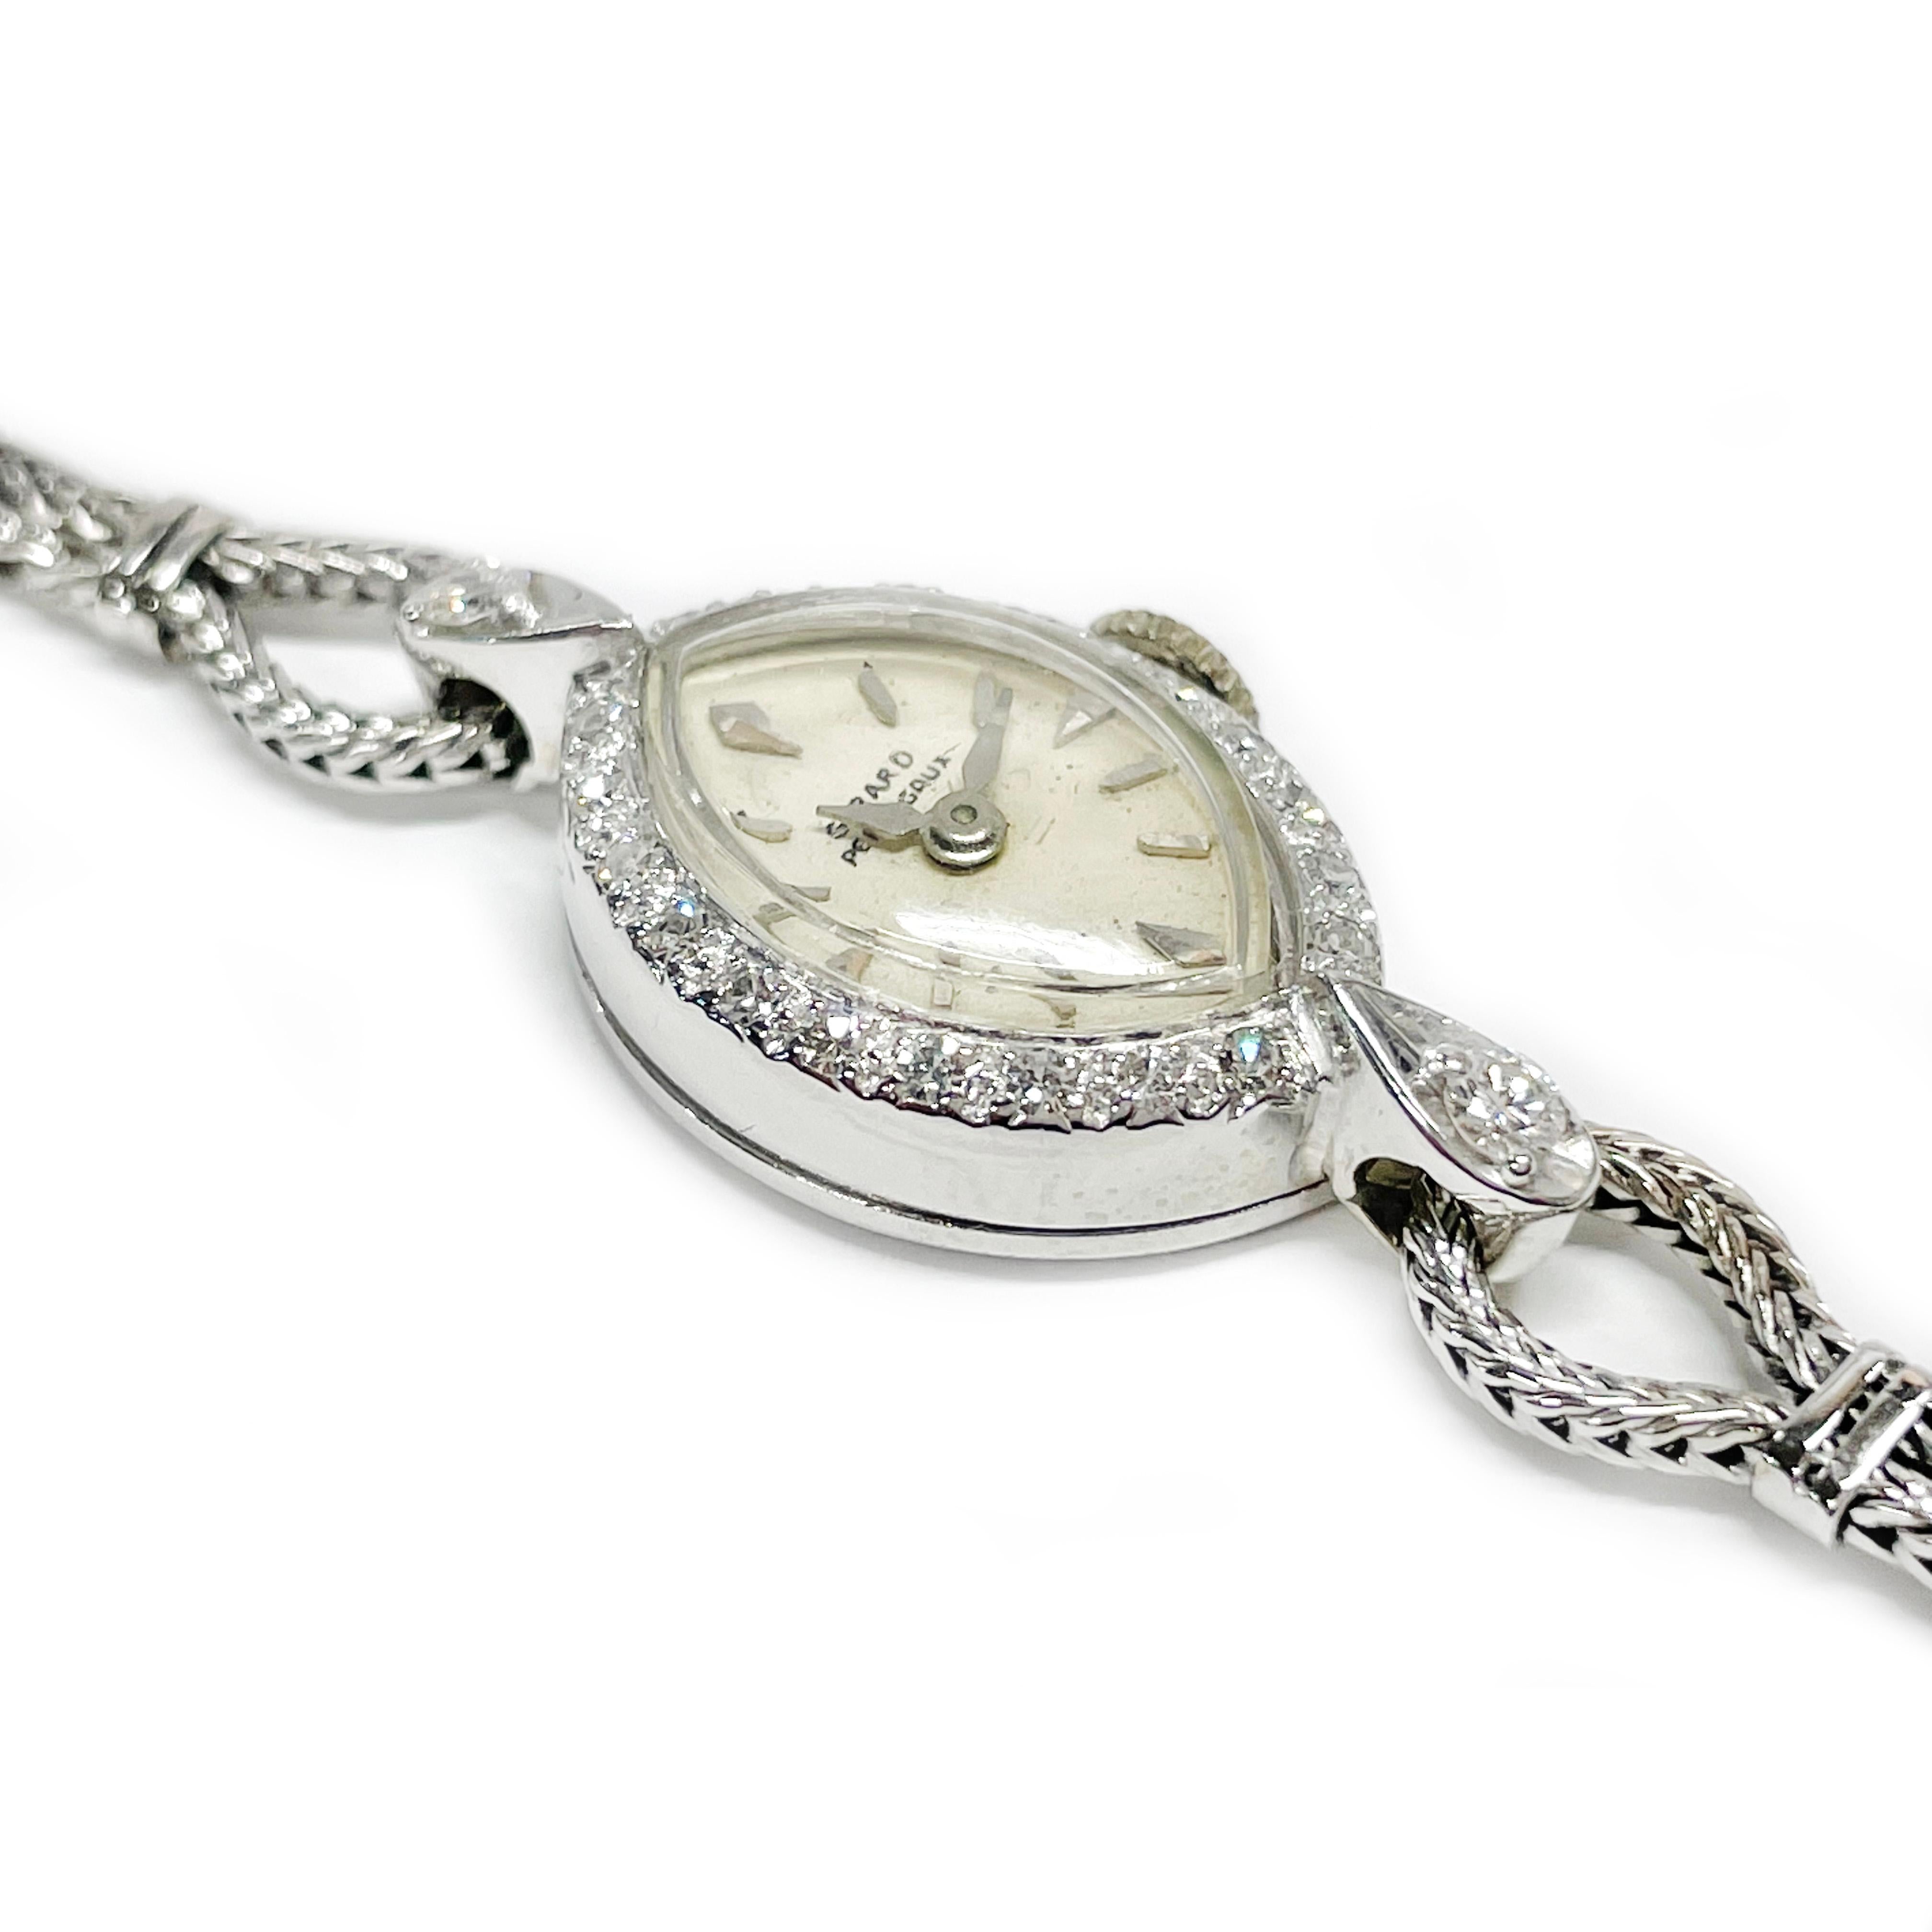 Girard Perregaux Damenuhr mit Diamantarmband, ca. 1930er Jahre. Das marquisefarbene Zifferblatt ist mit runden, perlenbesetzten Diamanten im Einzelschliff eingefasst und mit silbernen Stunden- und Minutenzeigern versehen. Die Uhr verfügt über